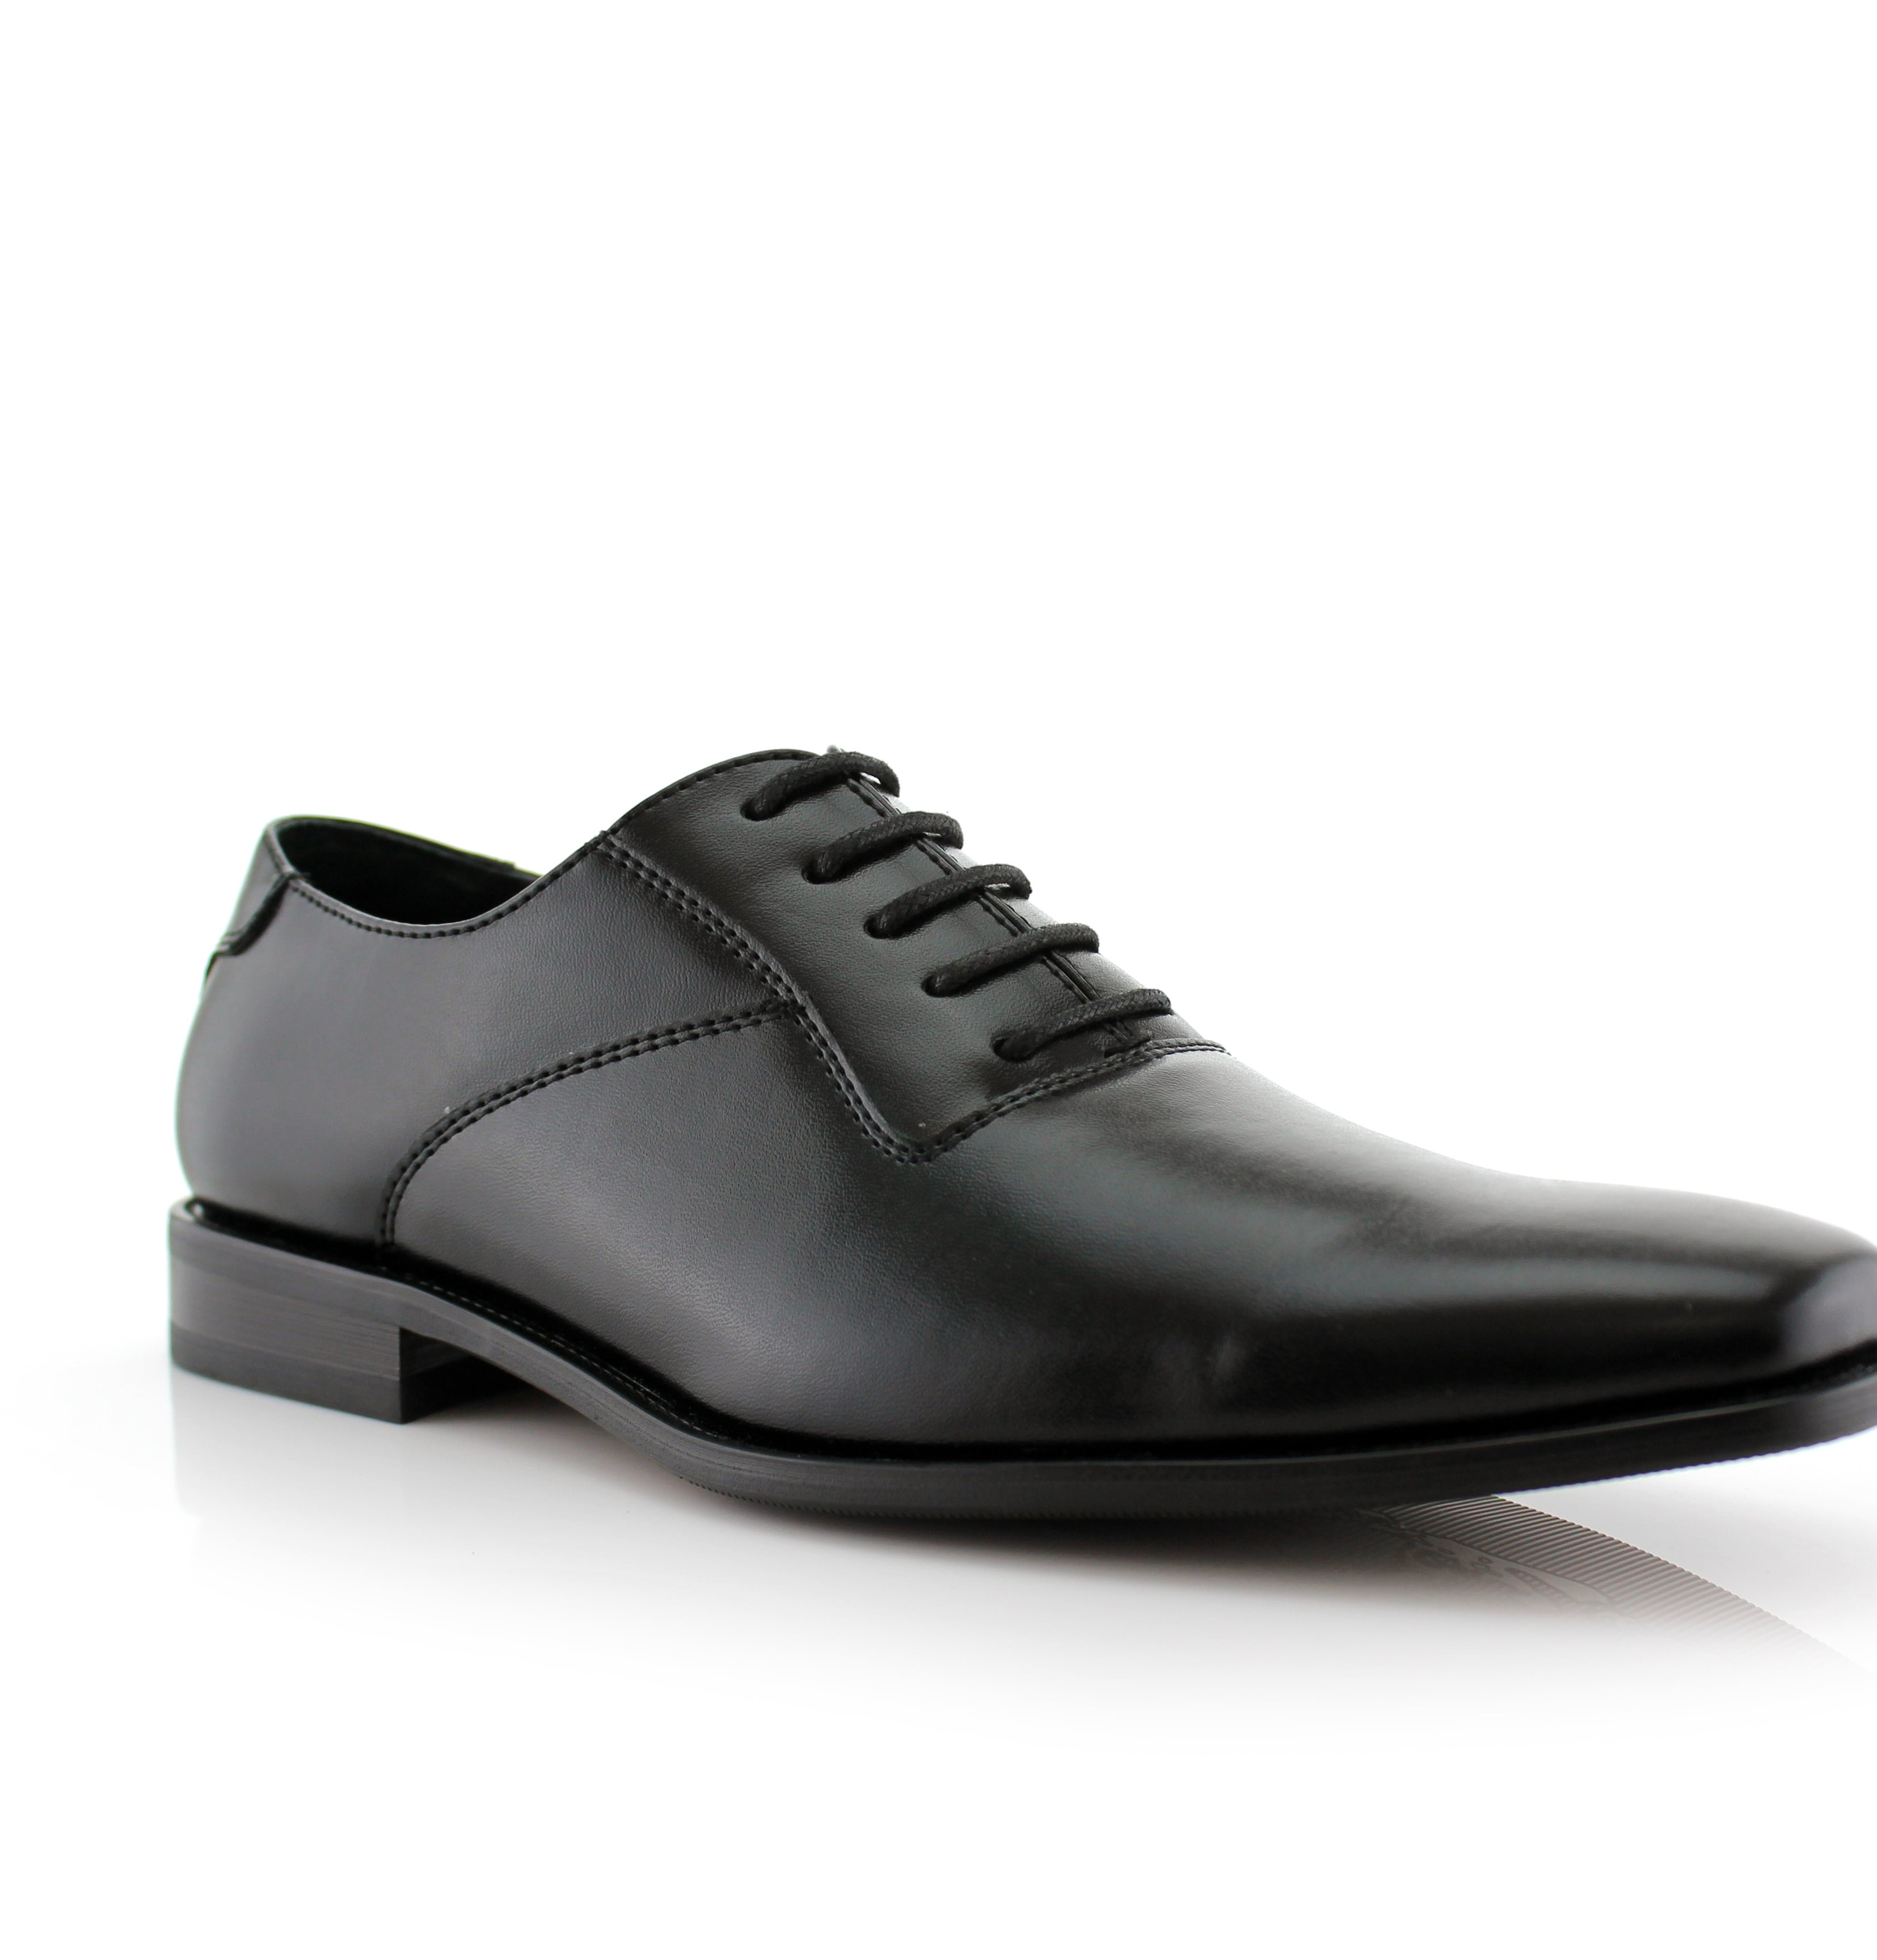 aldo dress shoes black